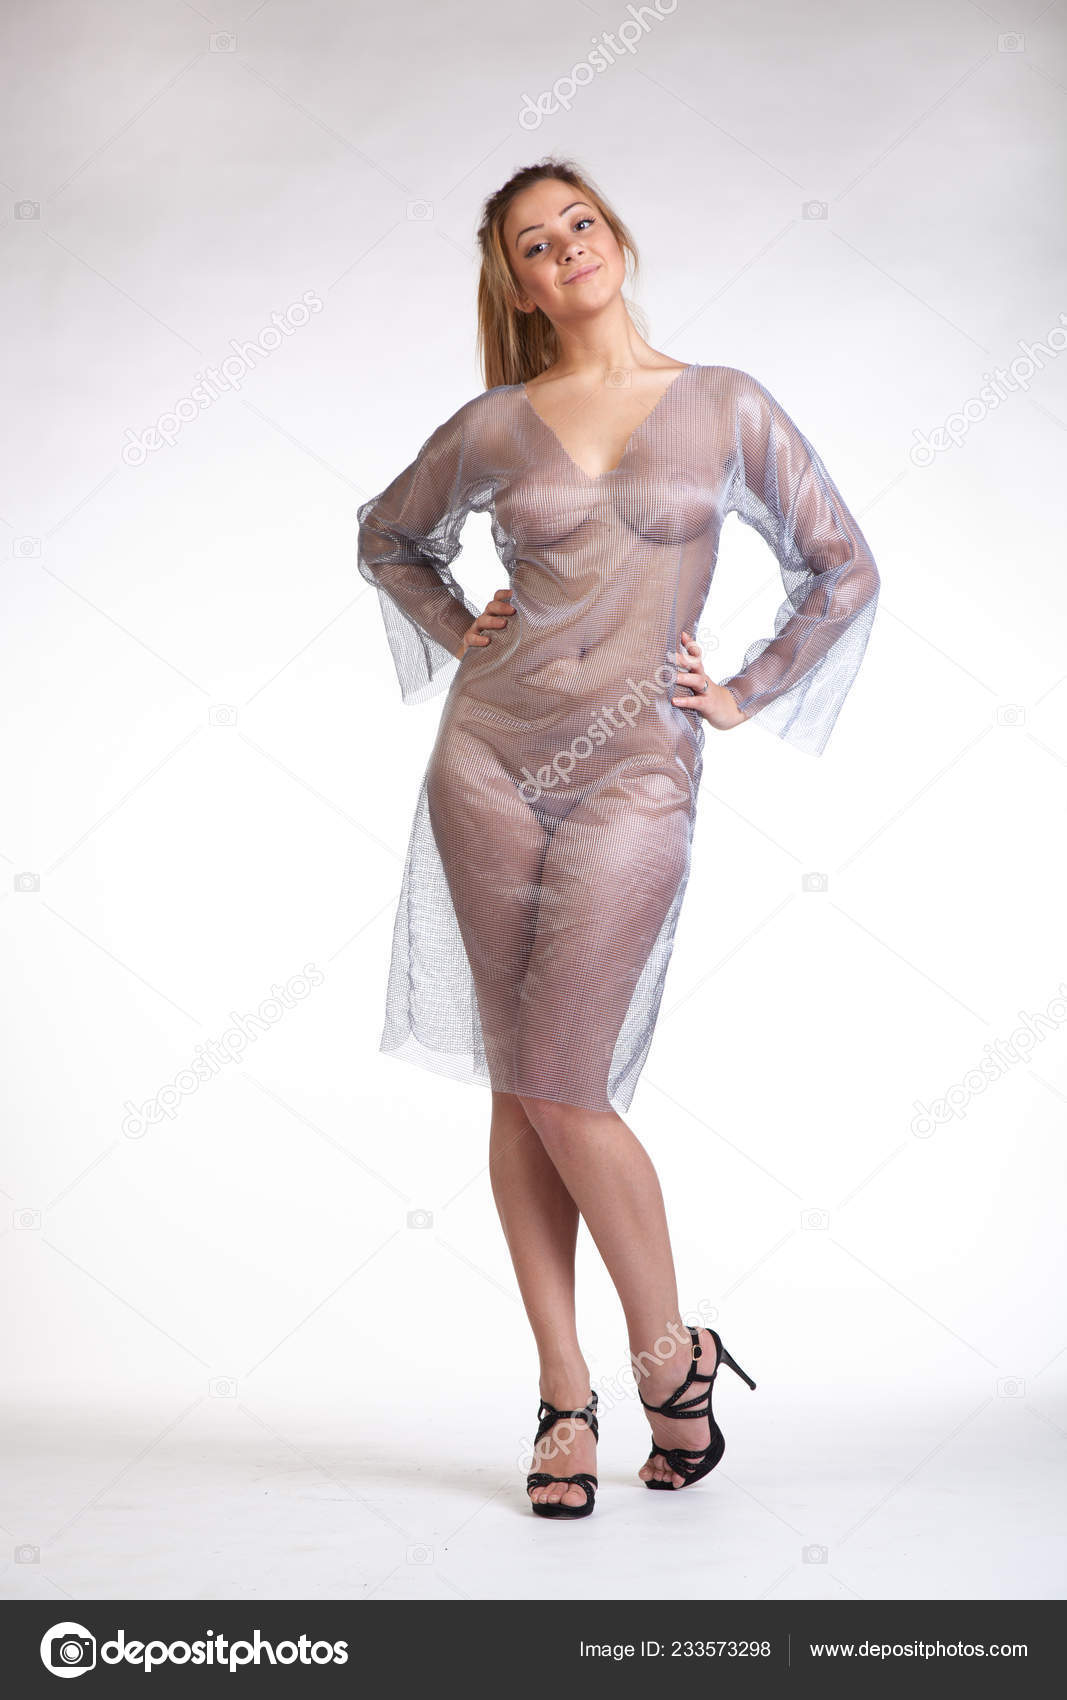 https://st4n.depositphotos.com/10086424/23357/i/1600/depositphotos_233573298-stock-photo-young-beautiful-girl-posing-nude.jpg